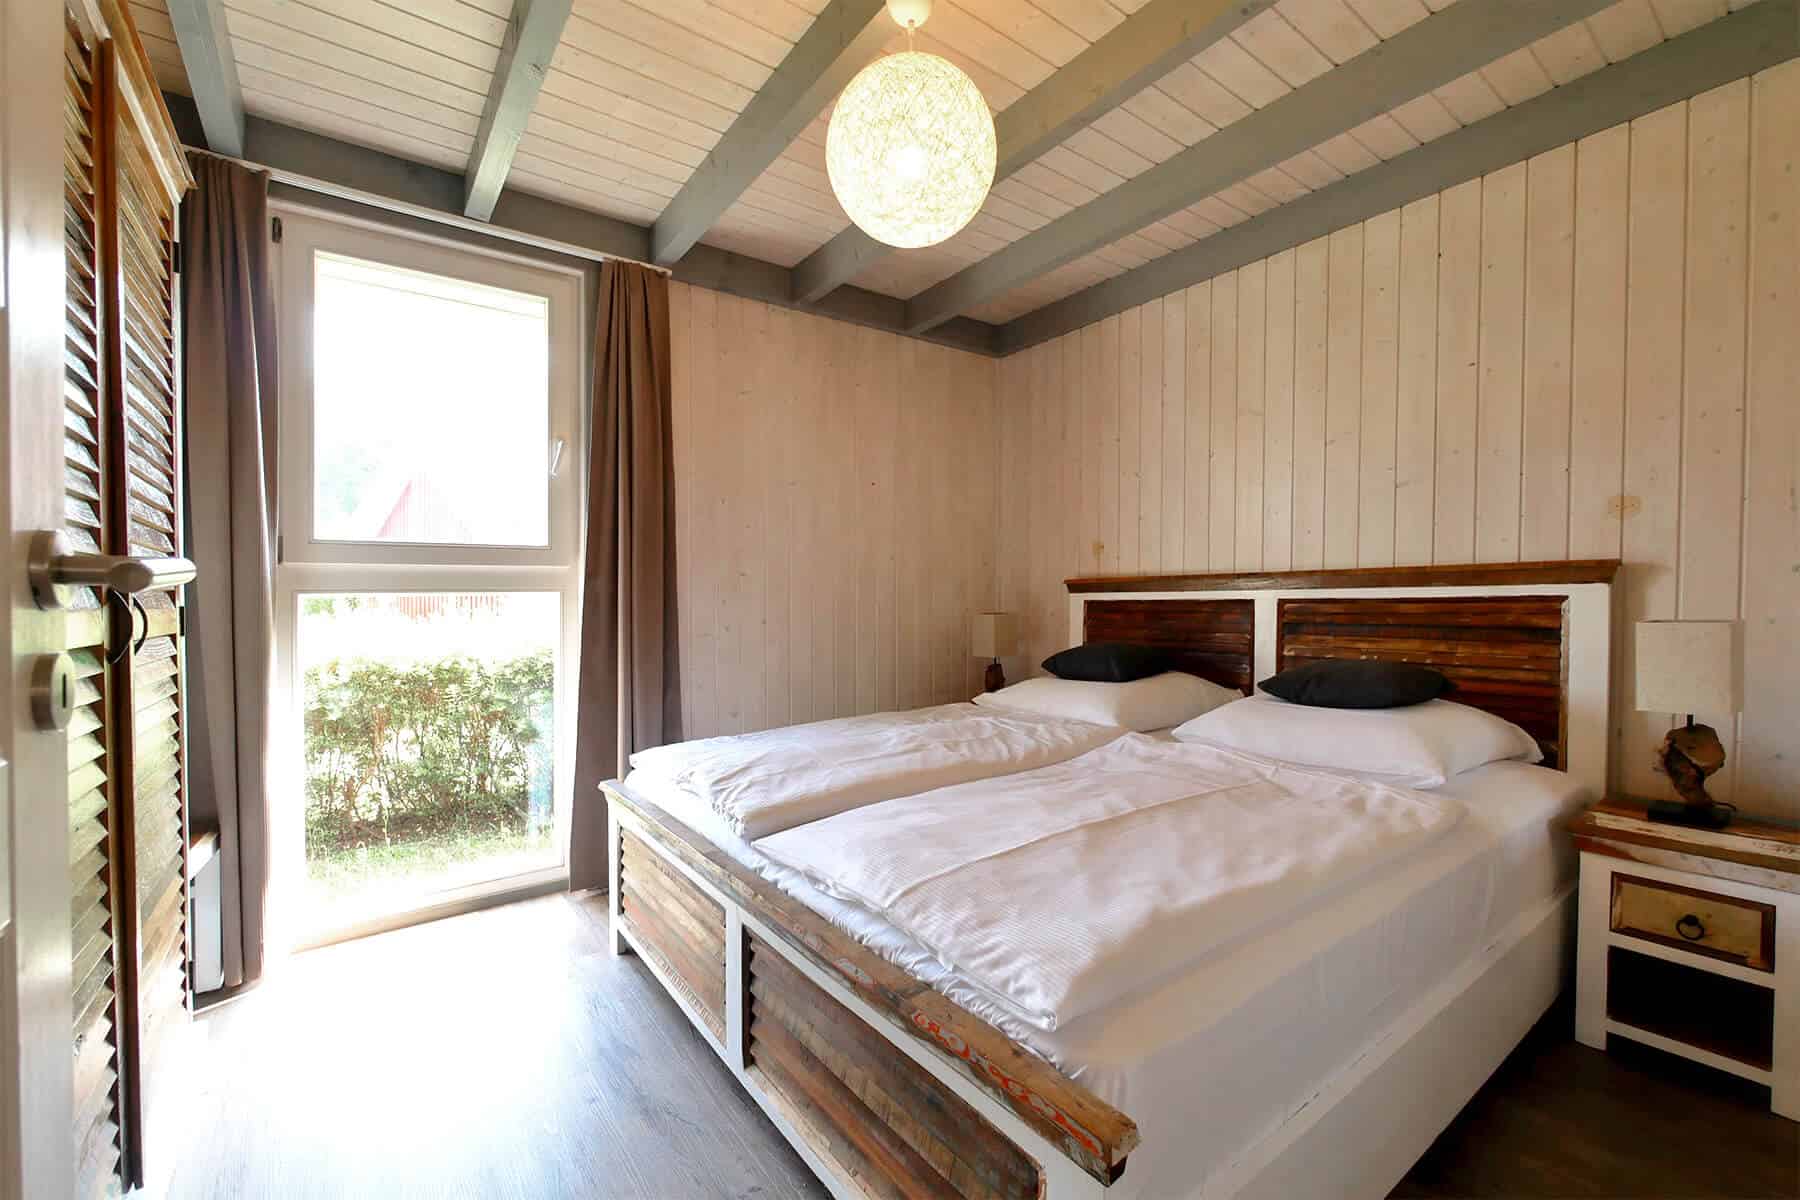 Ferienhaus Seeperle XL am Scharmützelsee. Schlafzimmer im Erdgeschoss mit großem Doppelbett und bodentiefen Fenster.